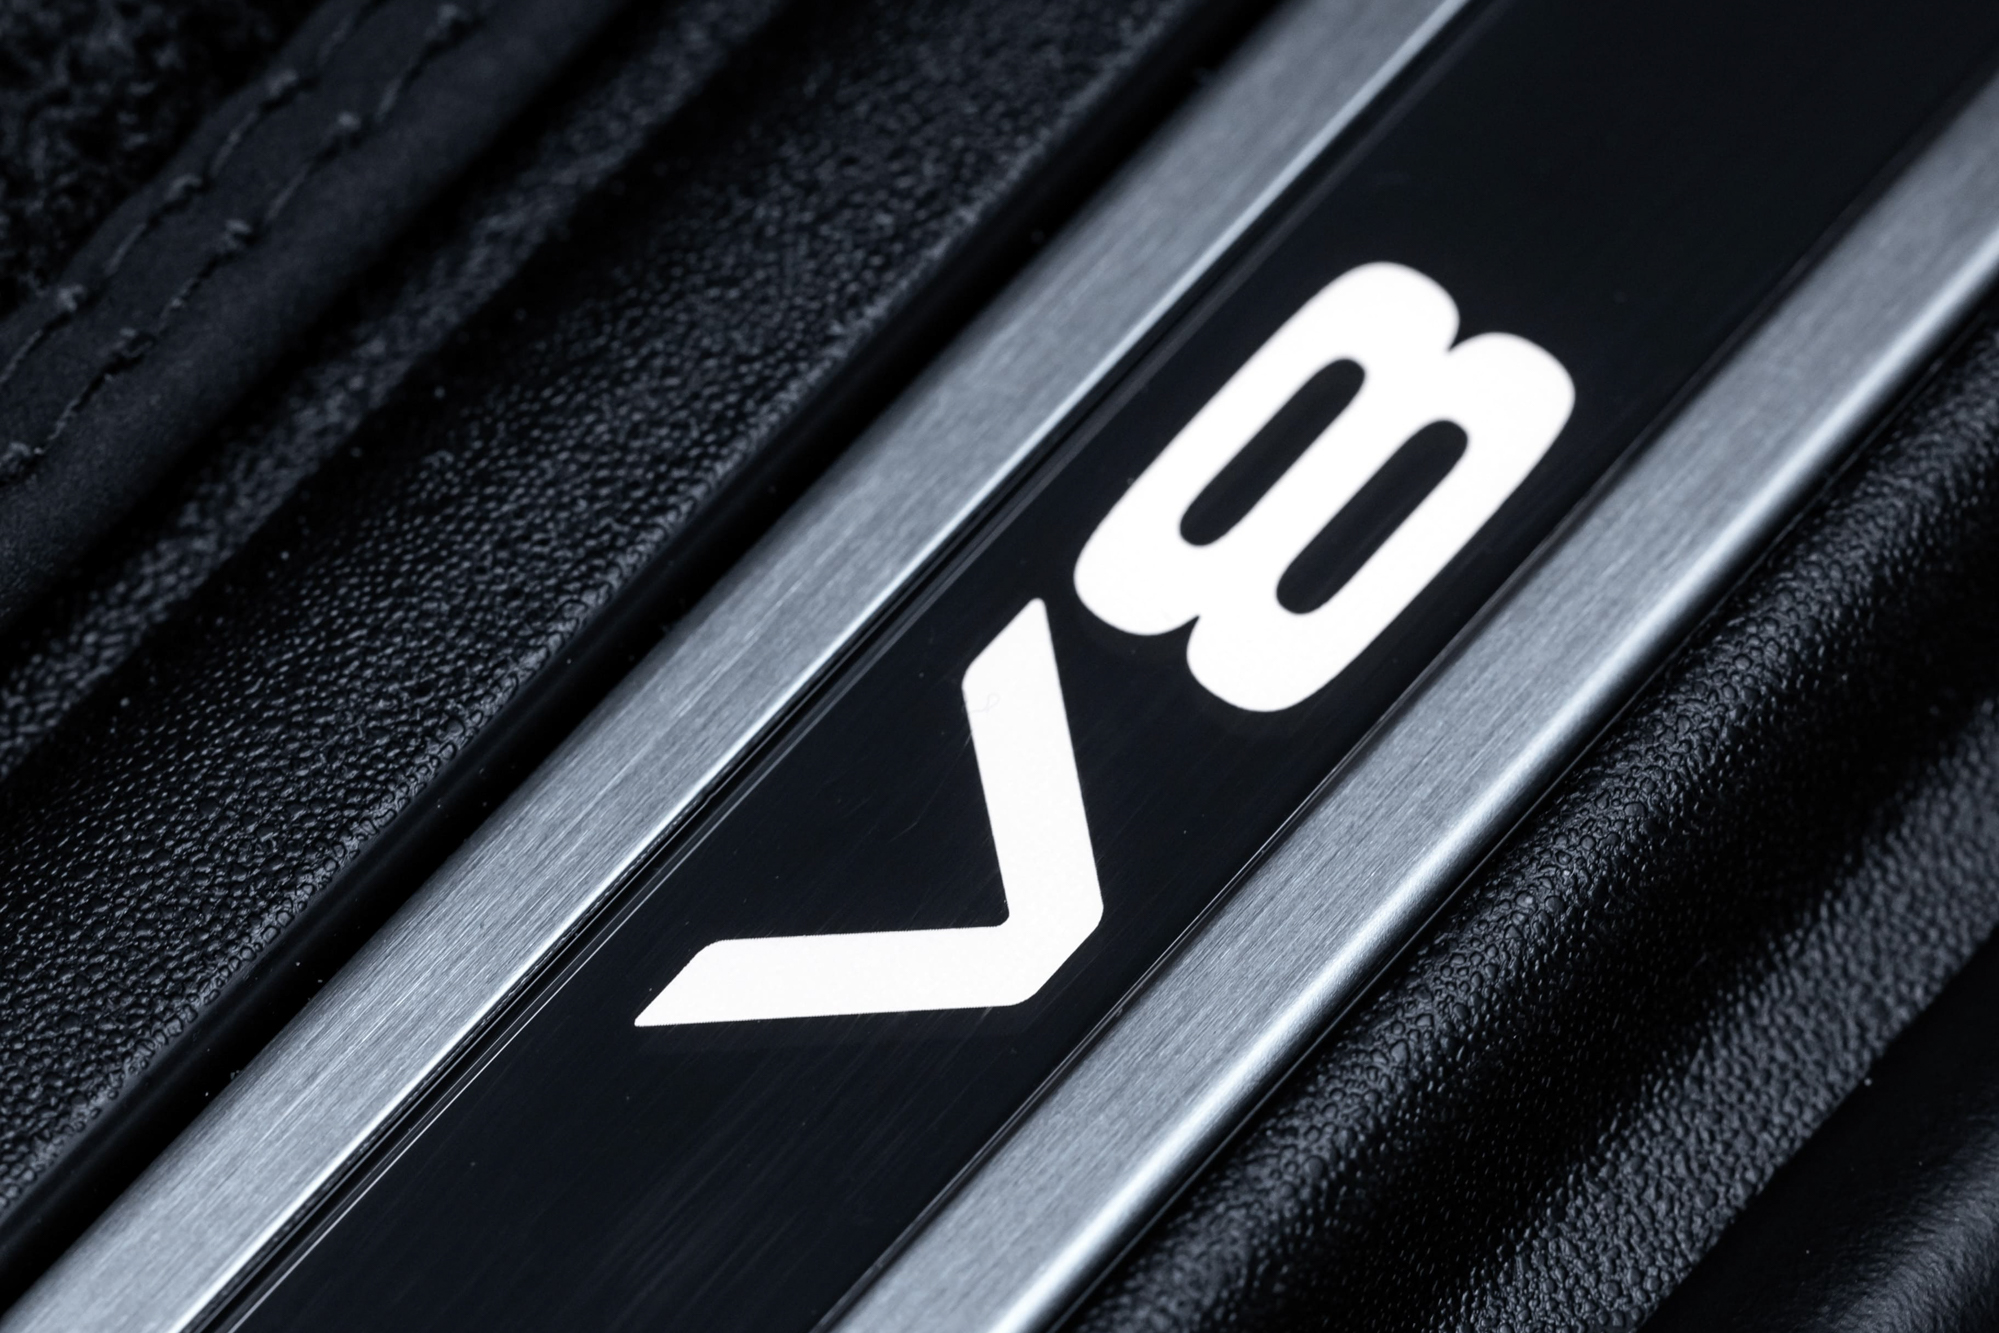 車室的發光金屬門檻上鑲嵌 V8 專屬字樣，彰顯其不凡的身分定位。